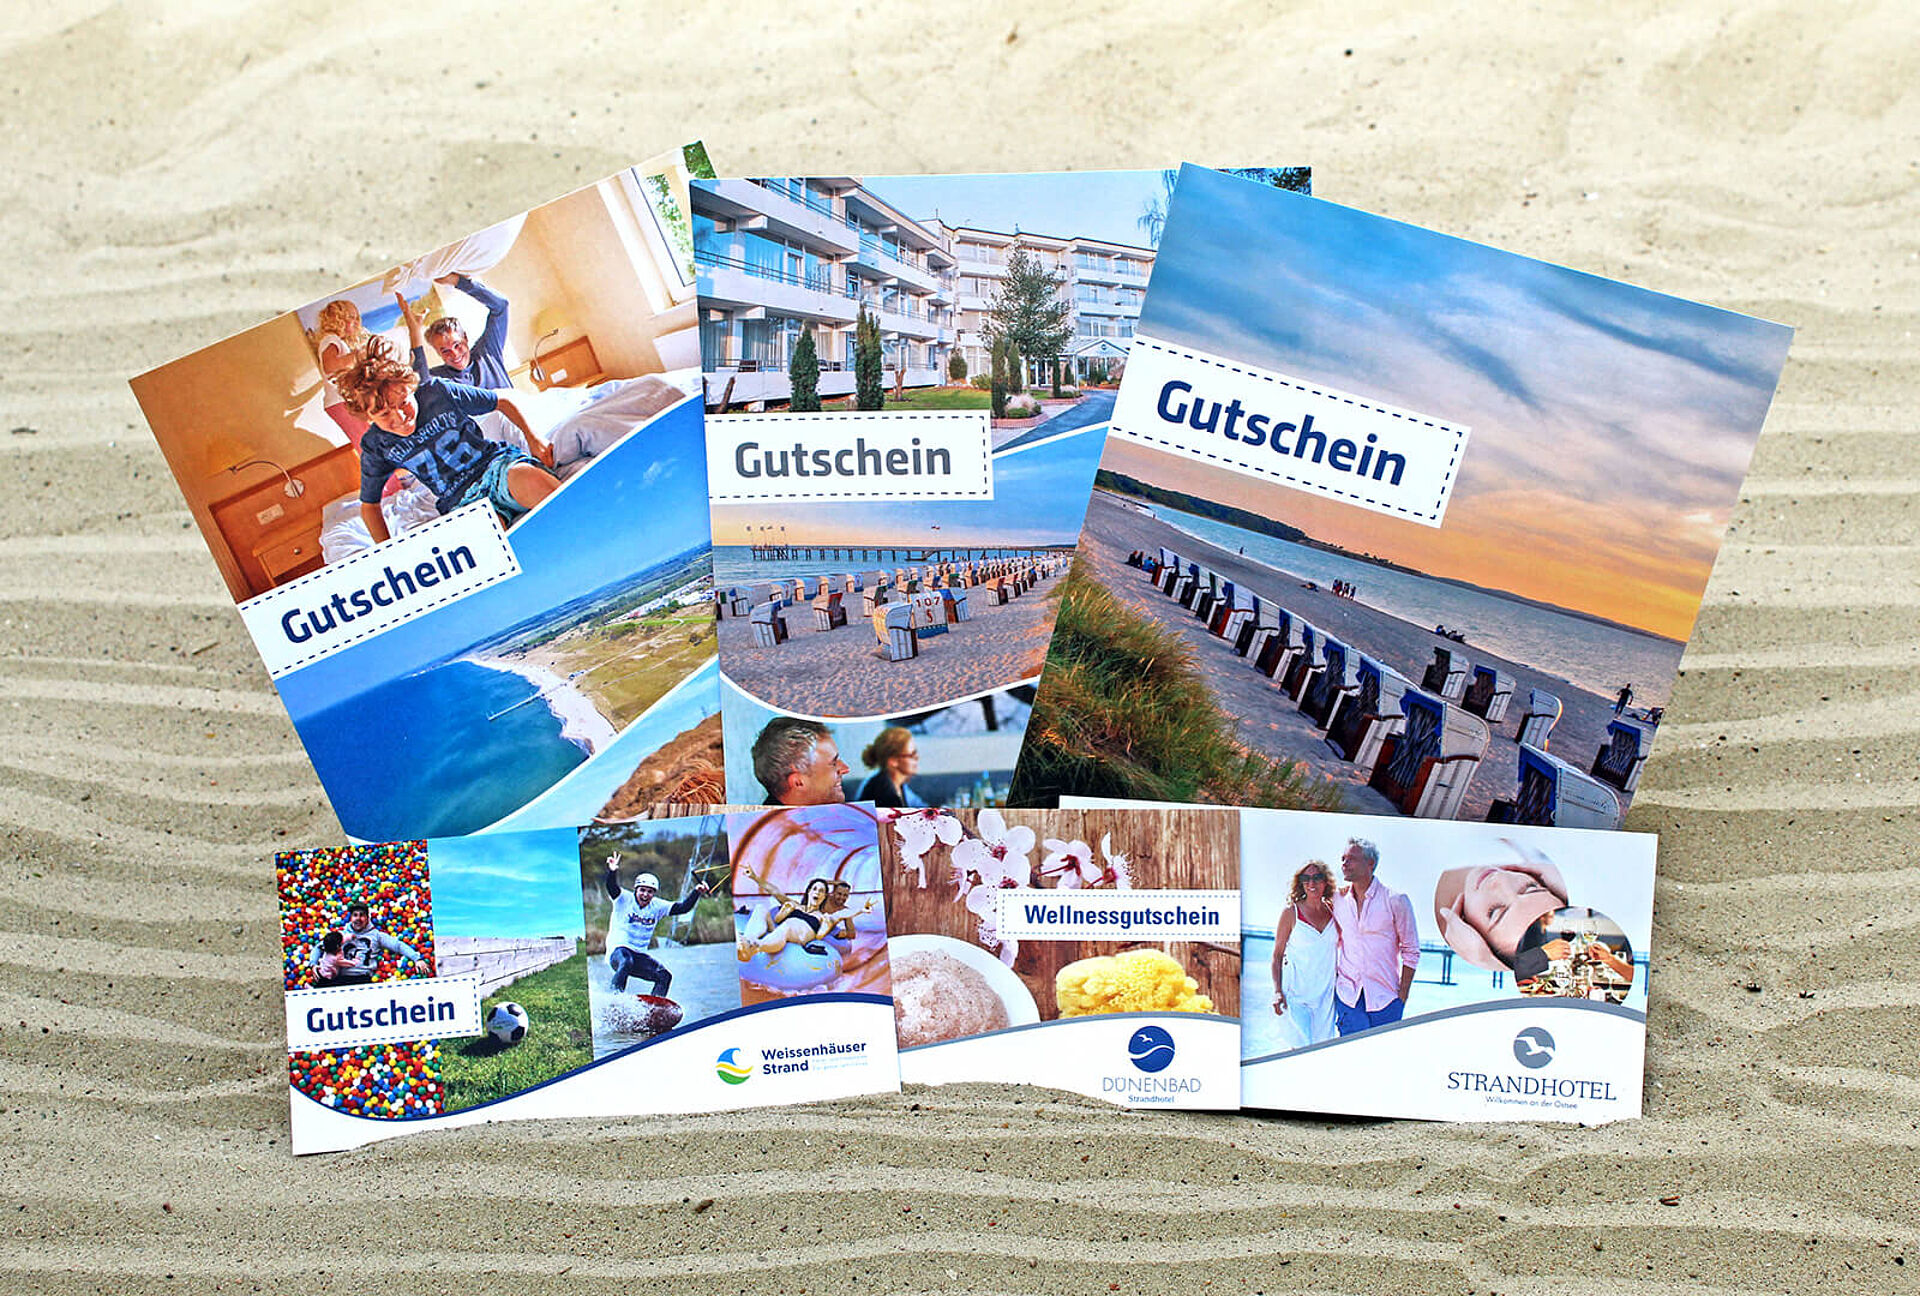 Weissenhäuser Strand Urlaub an der Ostsee Gutscheine Online kaufen